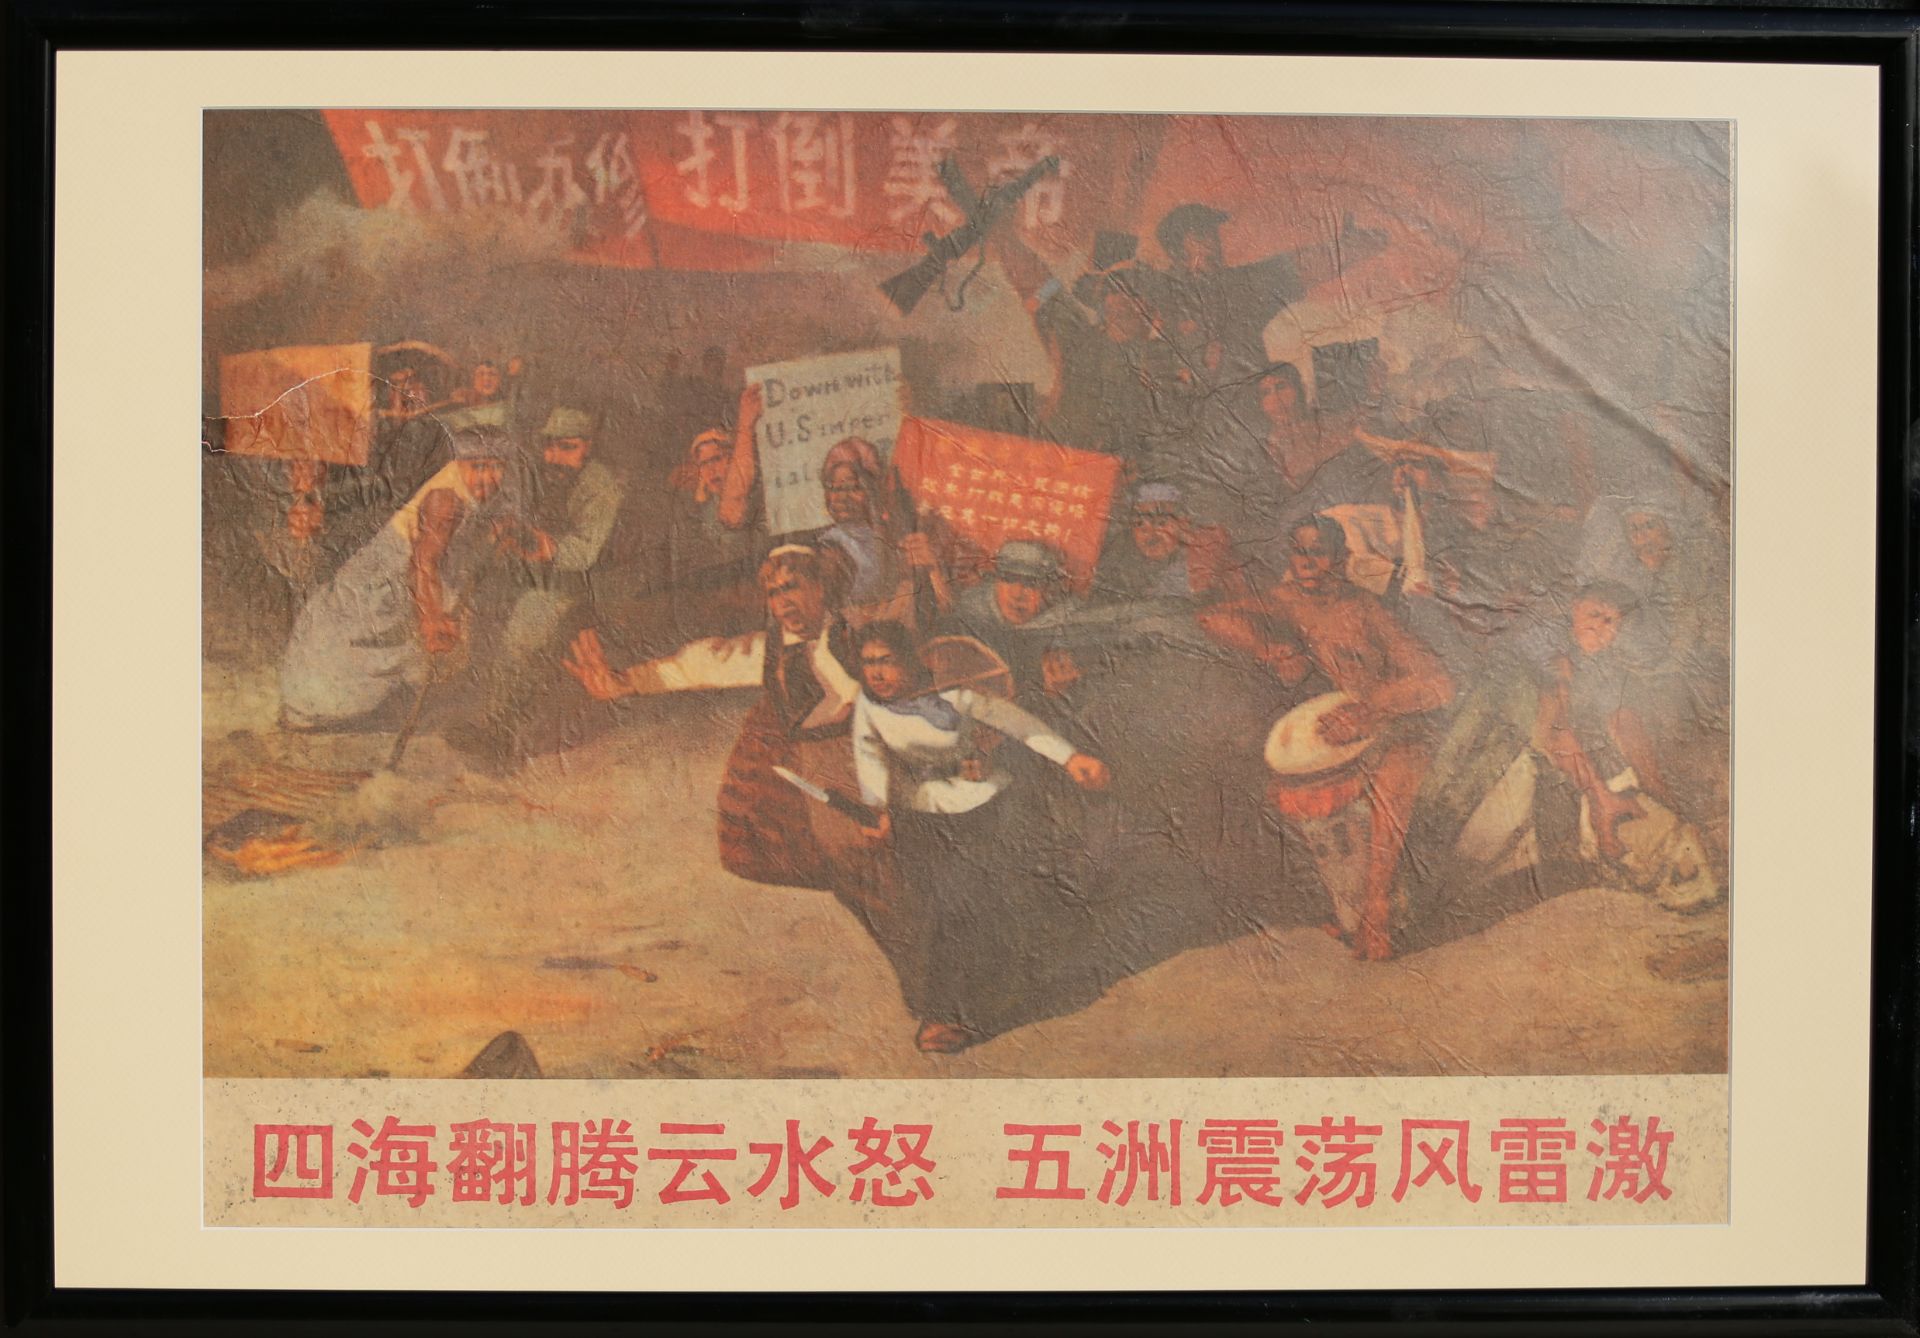 17 Affiches de propagande de la révolution culturelle chinoise Encadrée 75cm x 52cm - Image 12 of 17